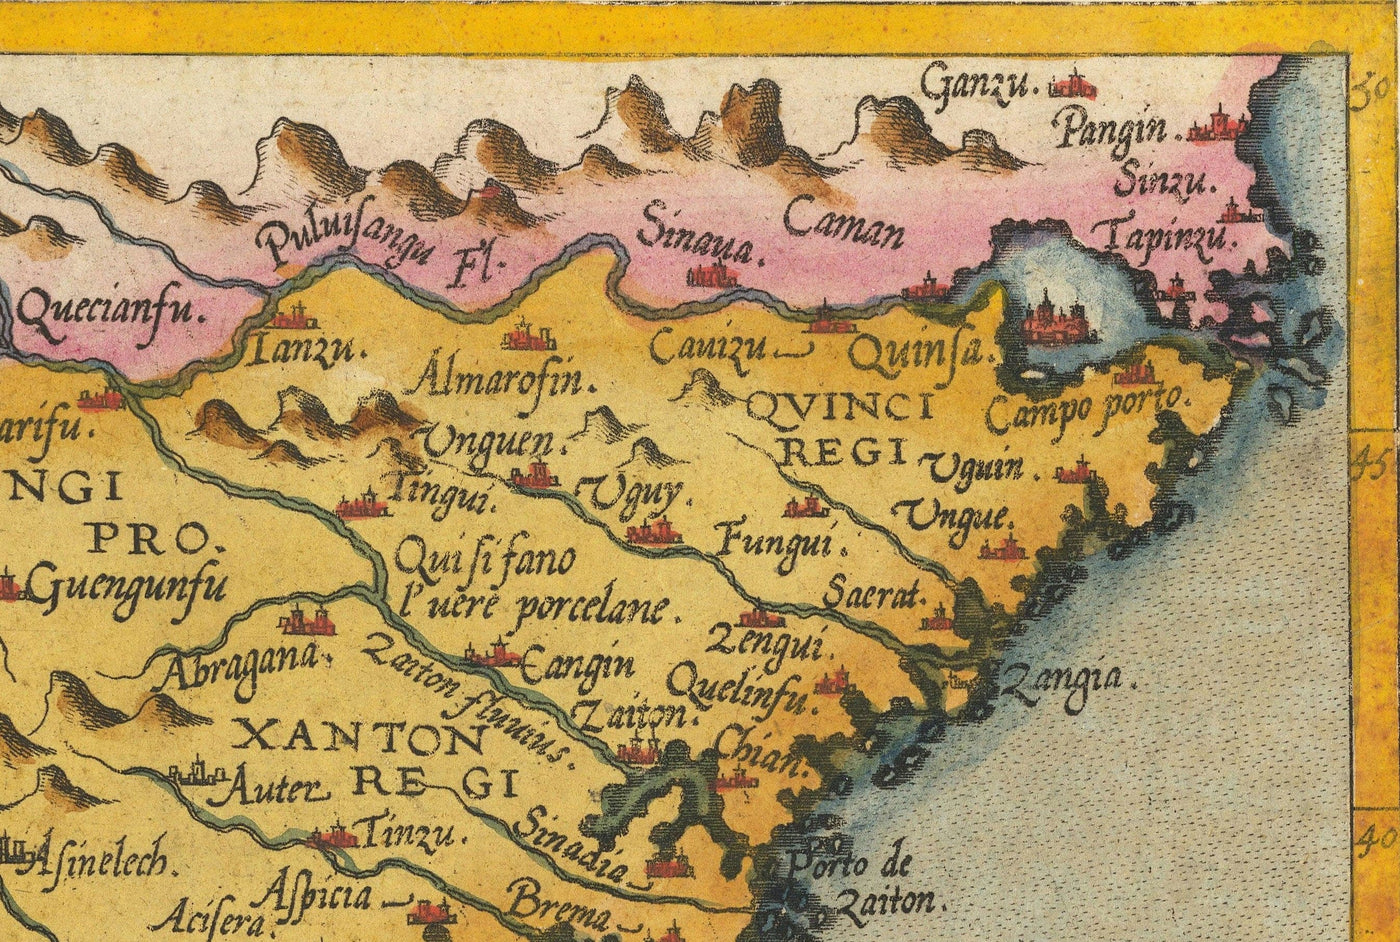 Antiguo mapa de la India y Asia Oriental, 1593 por de Jode - China, Nepal, Laos, Tailandia, Sri Lanka, Filipinas, Malasia